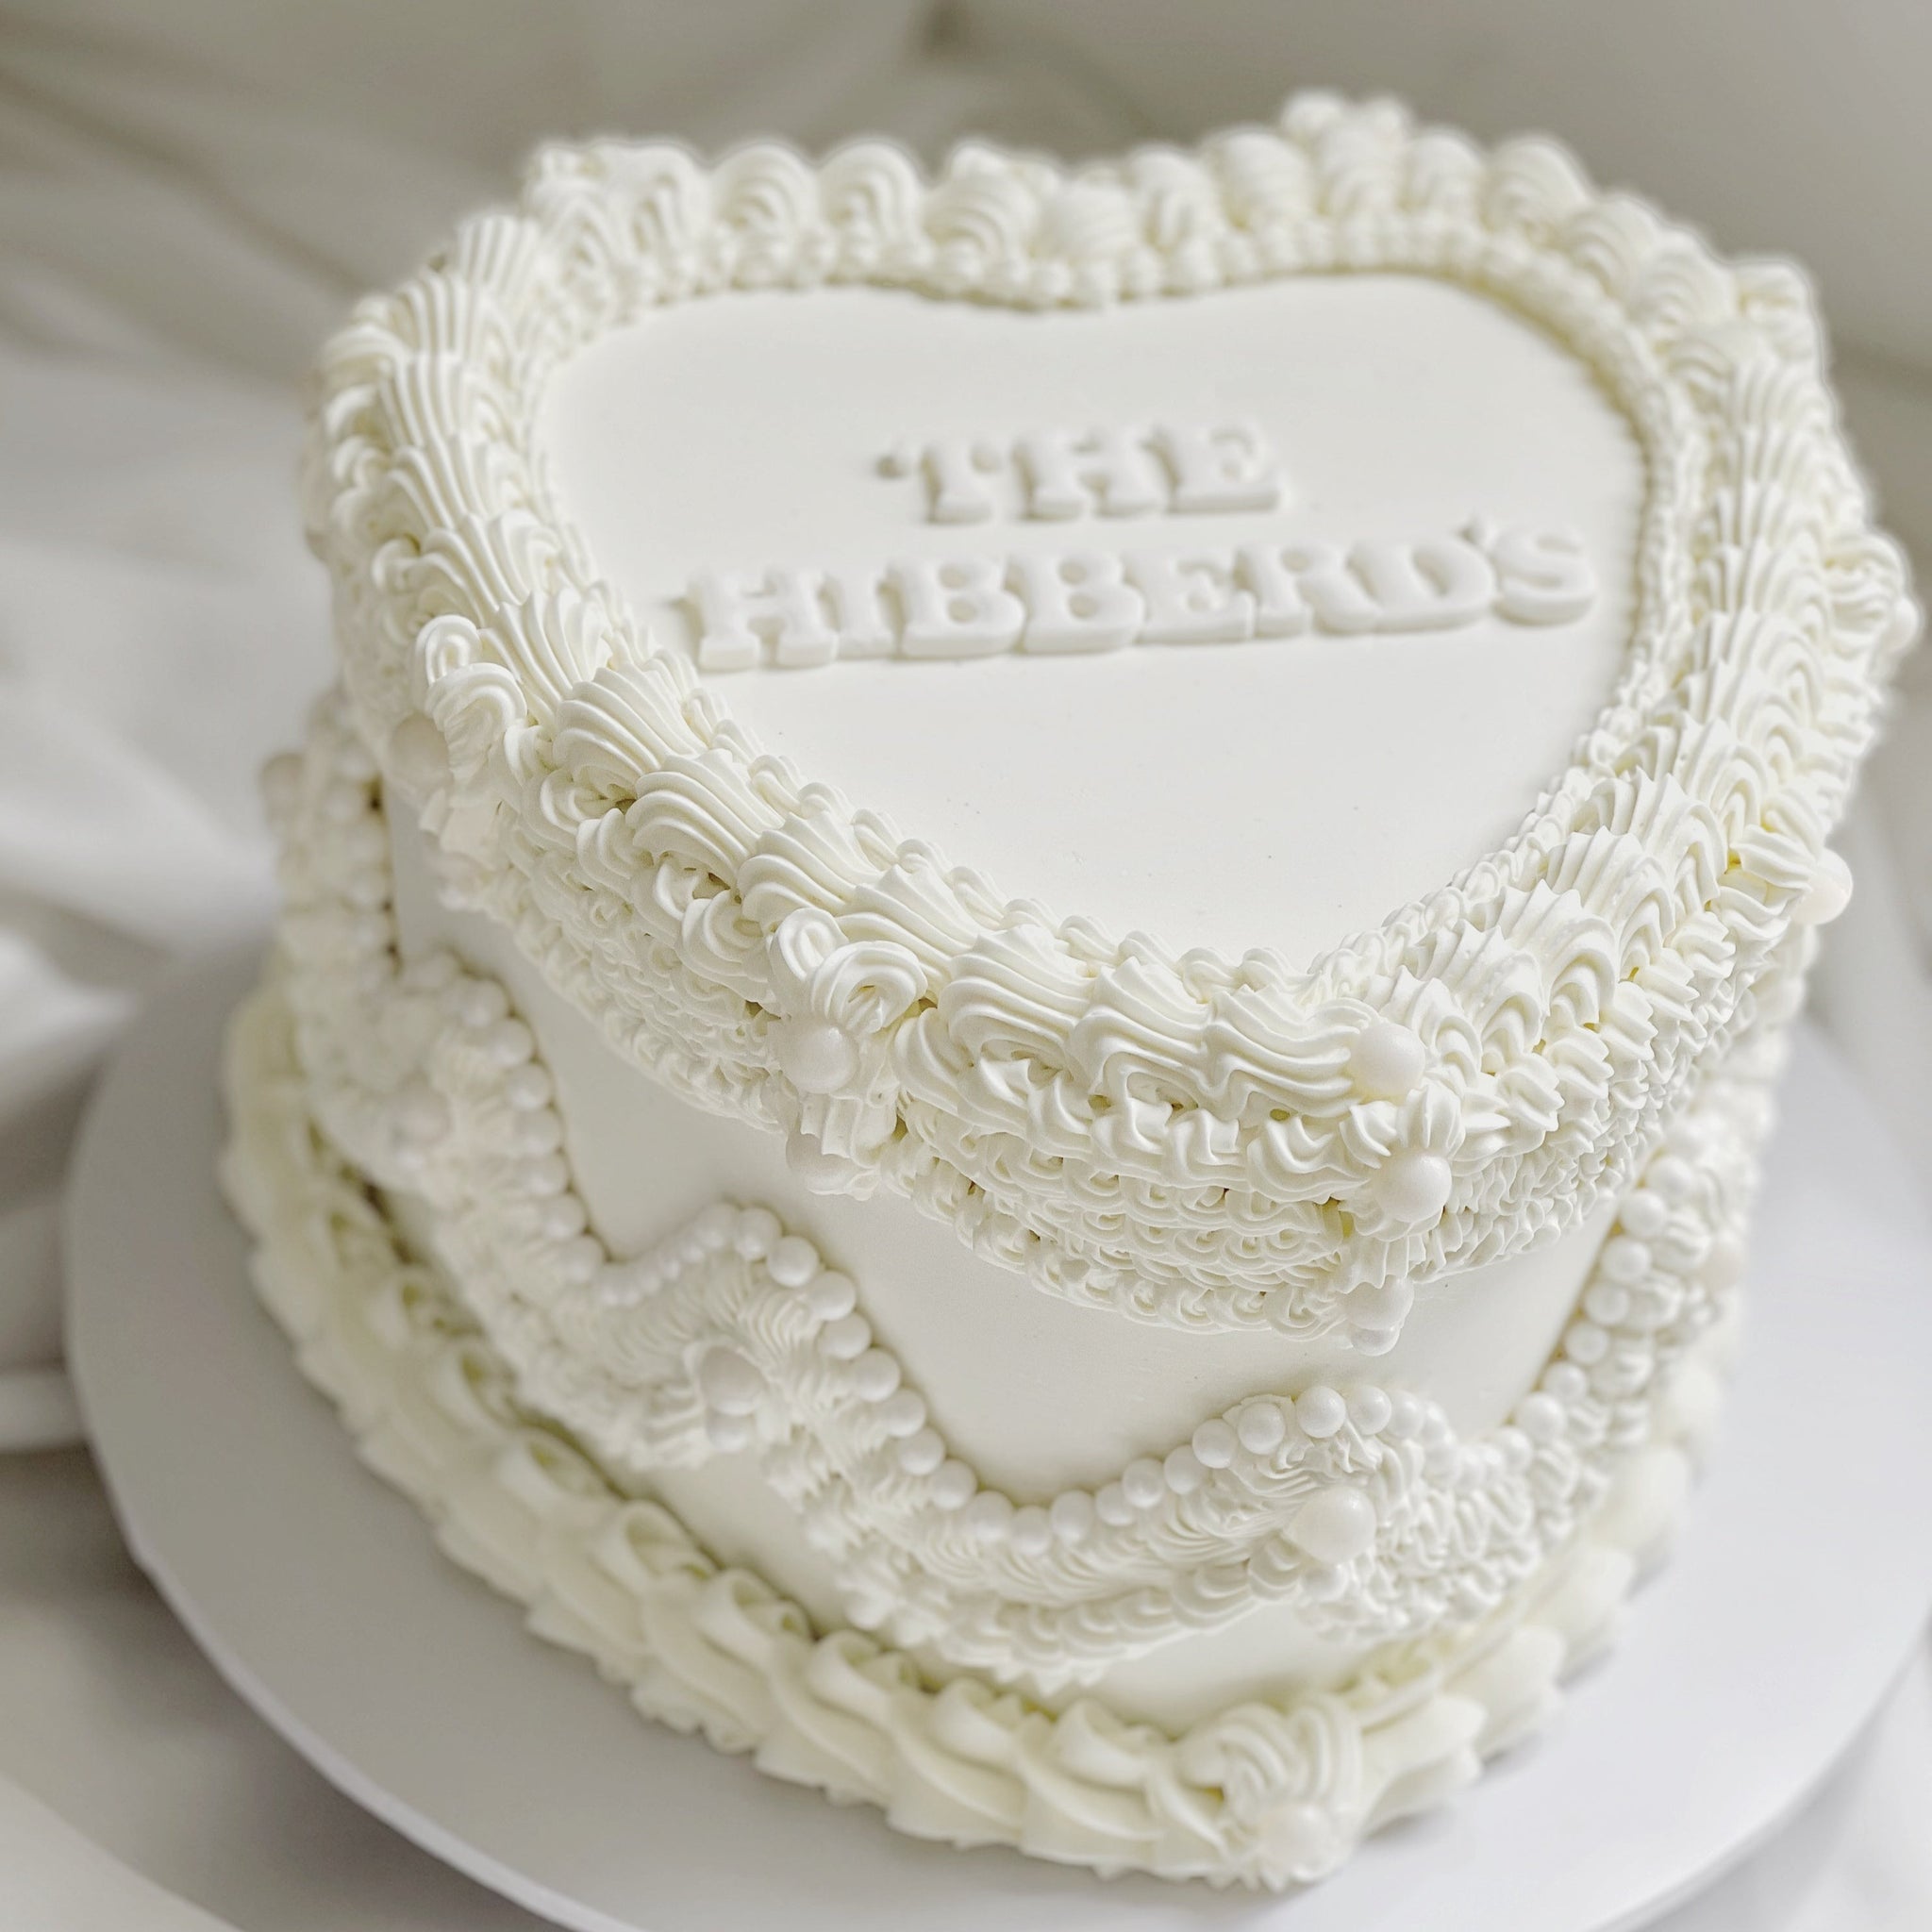 Heart Cake Tutorial {Surprise Inside Cake} - i am baker